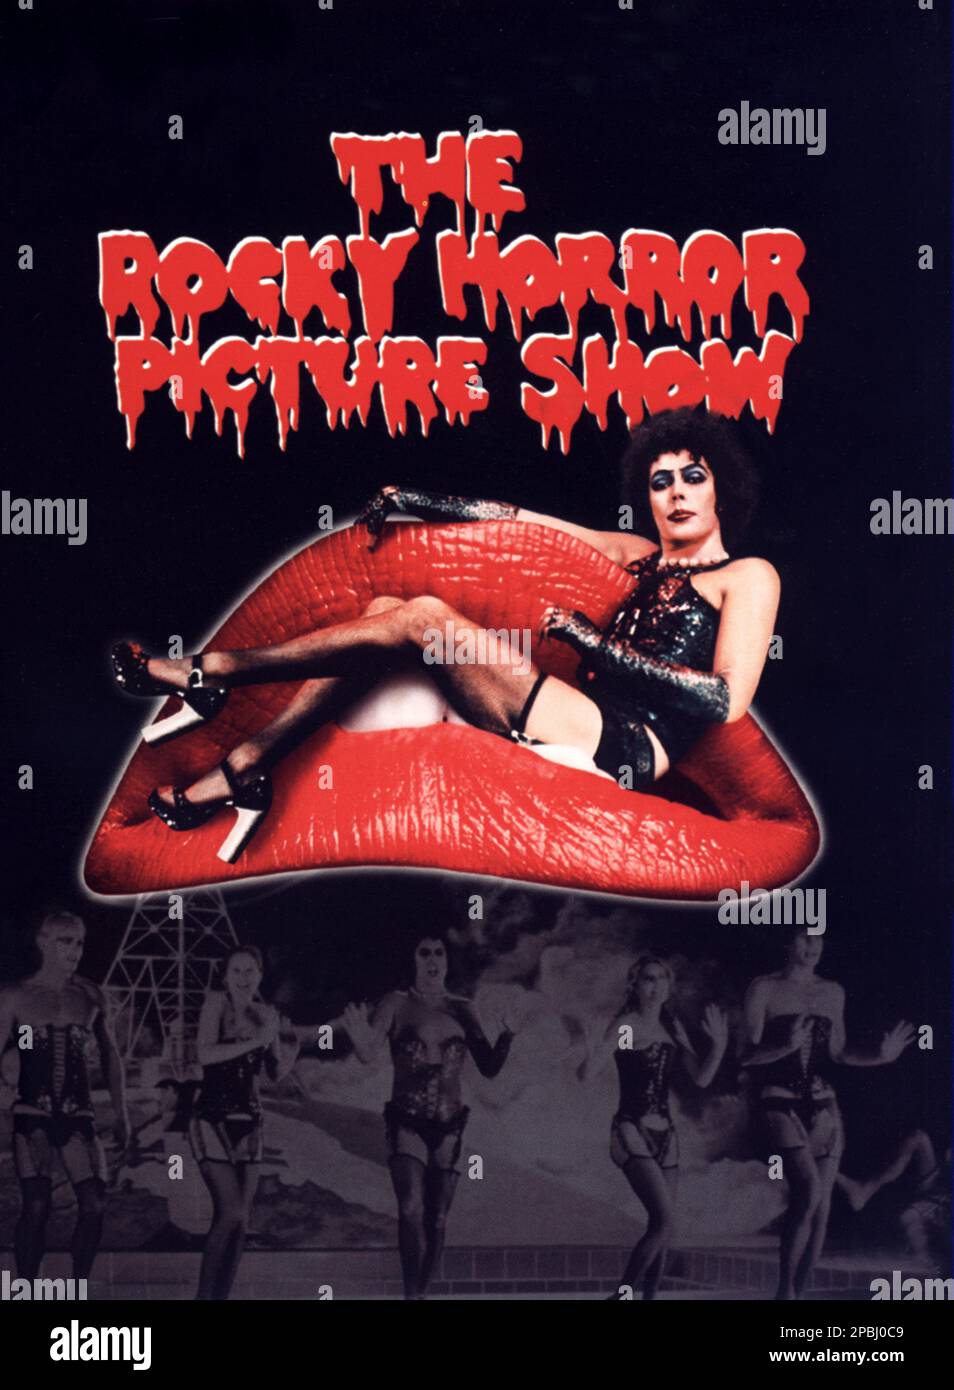 1975 : il poster italiano che pubblicizza il film CULT THE ROCKY HORROR PICTURE SHOW , di Jim Sharman , con musiche di Richard o'Brian , con TIM CURRY , Susan sarandon , Barry Bostwick, Carne Loaf - FILM - CINEMA - poster pubblico - poster - pubblicità - locandina - bocca - bocca - labra rosse - labbra rosse - guepiere - tacchi - ruote - scarpe - scarpe - GAY - OMOSESSUALE - OMOSESSUALITÀ - OMOSESSUALE - omosessualità - LGBT - bisessualità - Bisessualita' - travestito - transgender - trans - GLTB - MUSICAL ---- NON PER USO pubblicitario PUBBLICITARY ---- NON PER uso PUBBLICO Foto Stock